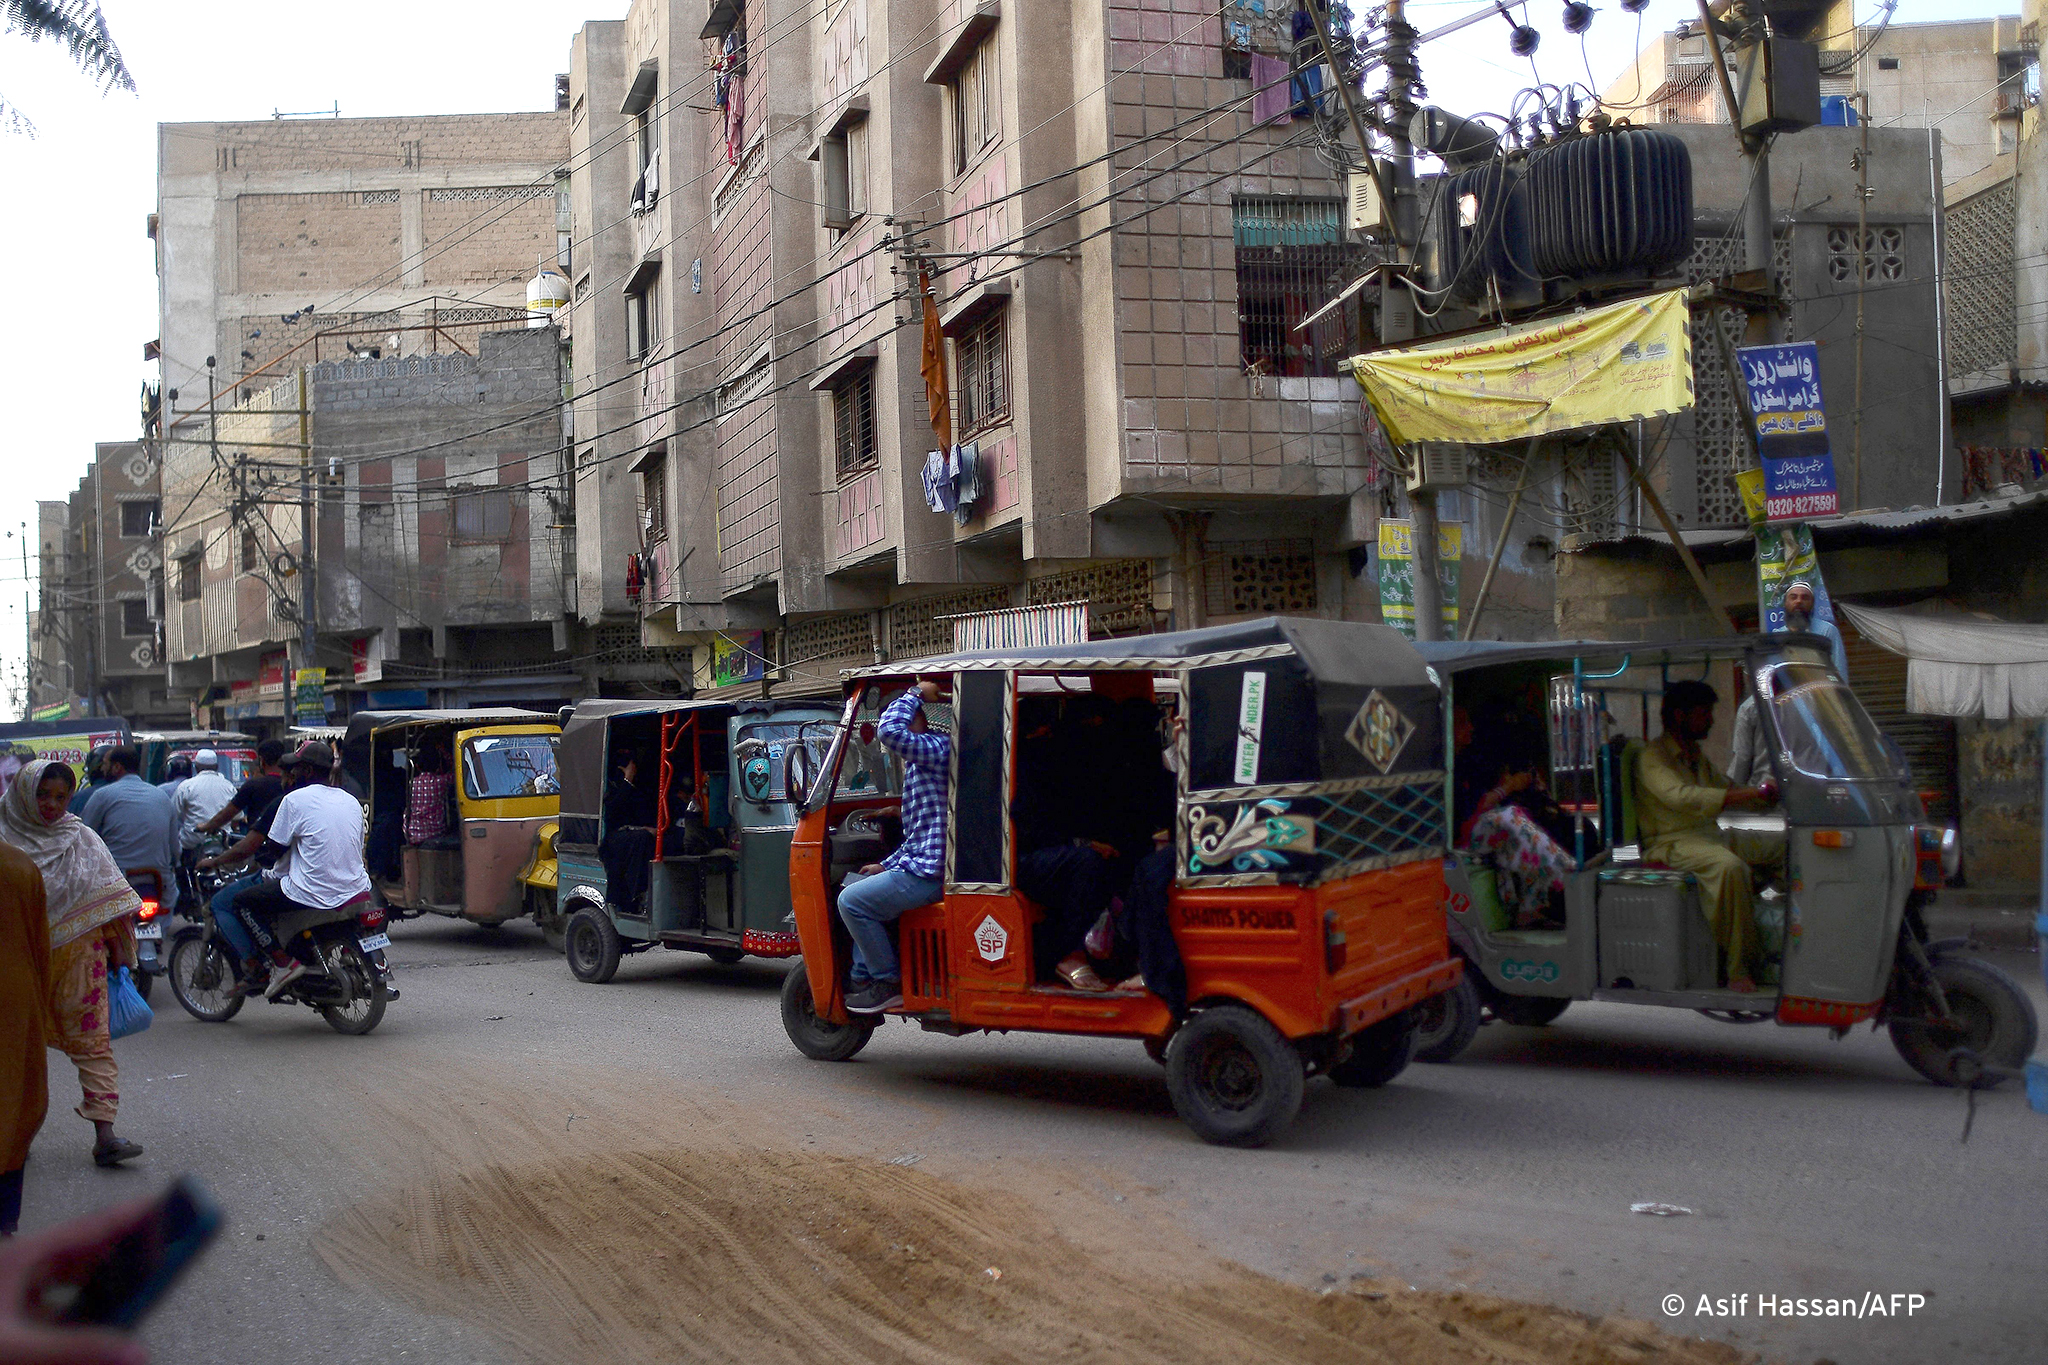 حي لياري في كراتشي الذي نشأت فيه مغنية الراب الشابة المحجبة المنقبة إيفا بي - باكستان. Karachi's Lyari district, where Eva B. grew up (photo: Asif Hassan/AFP)